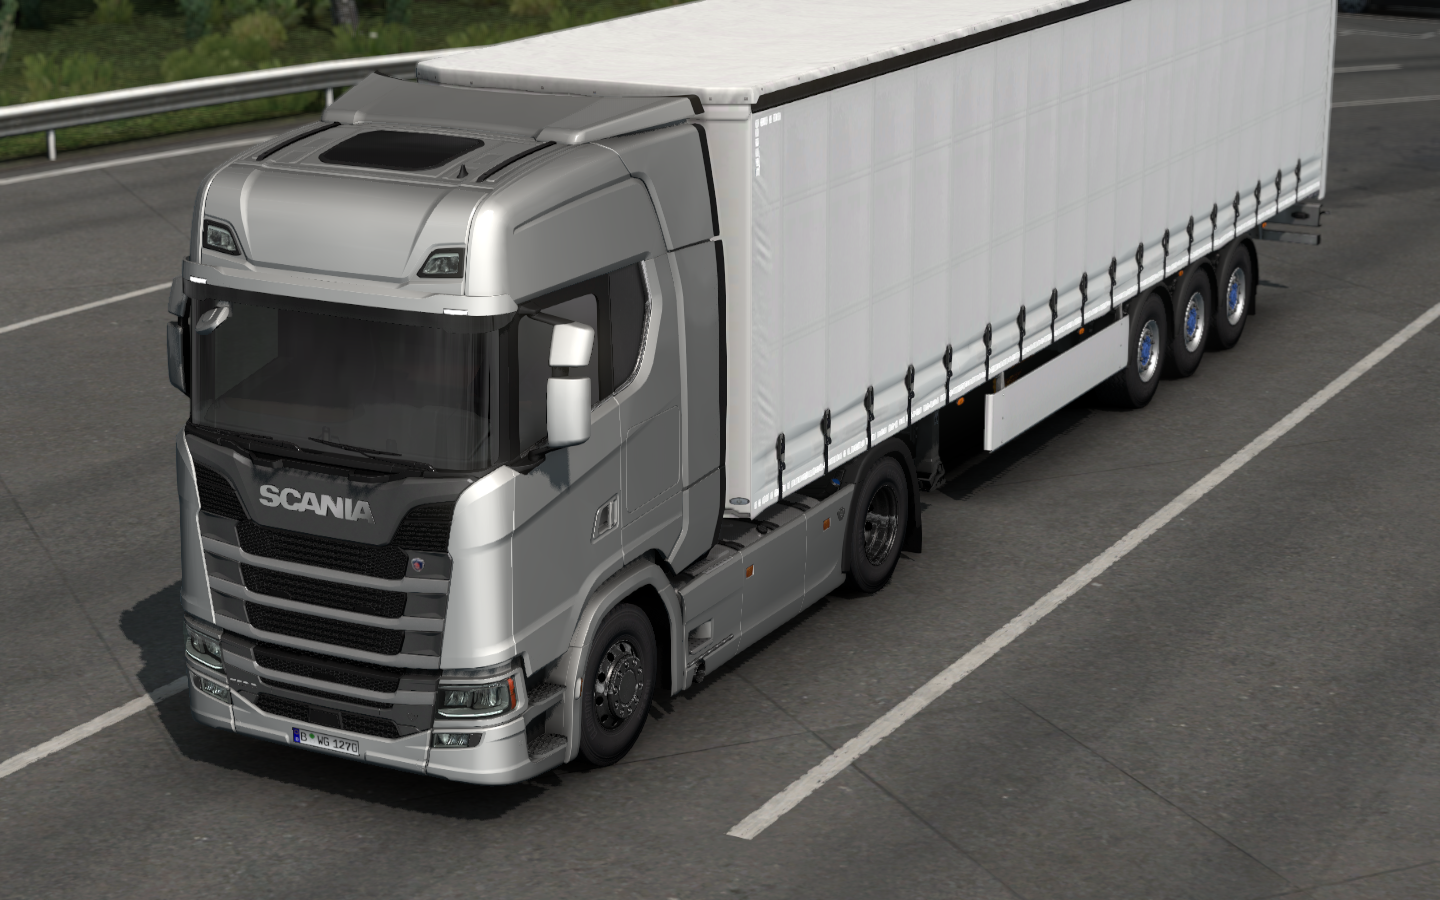 Video Games Euro Truck Simulator 2 Scania Truck 1440x900